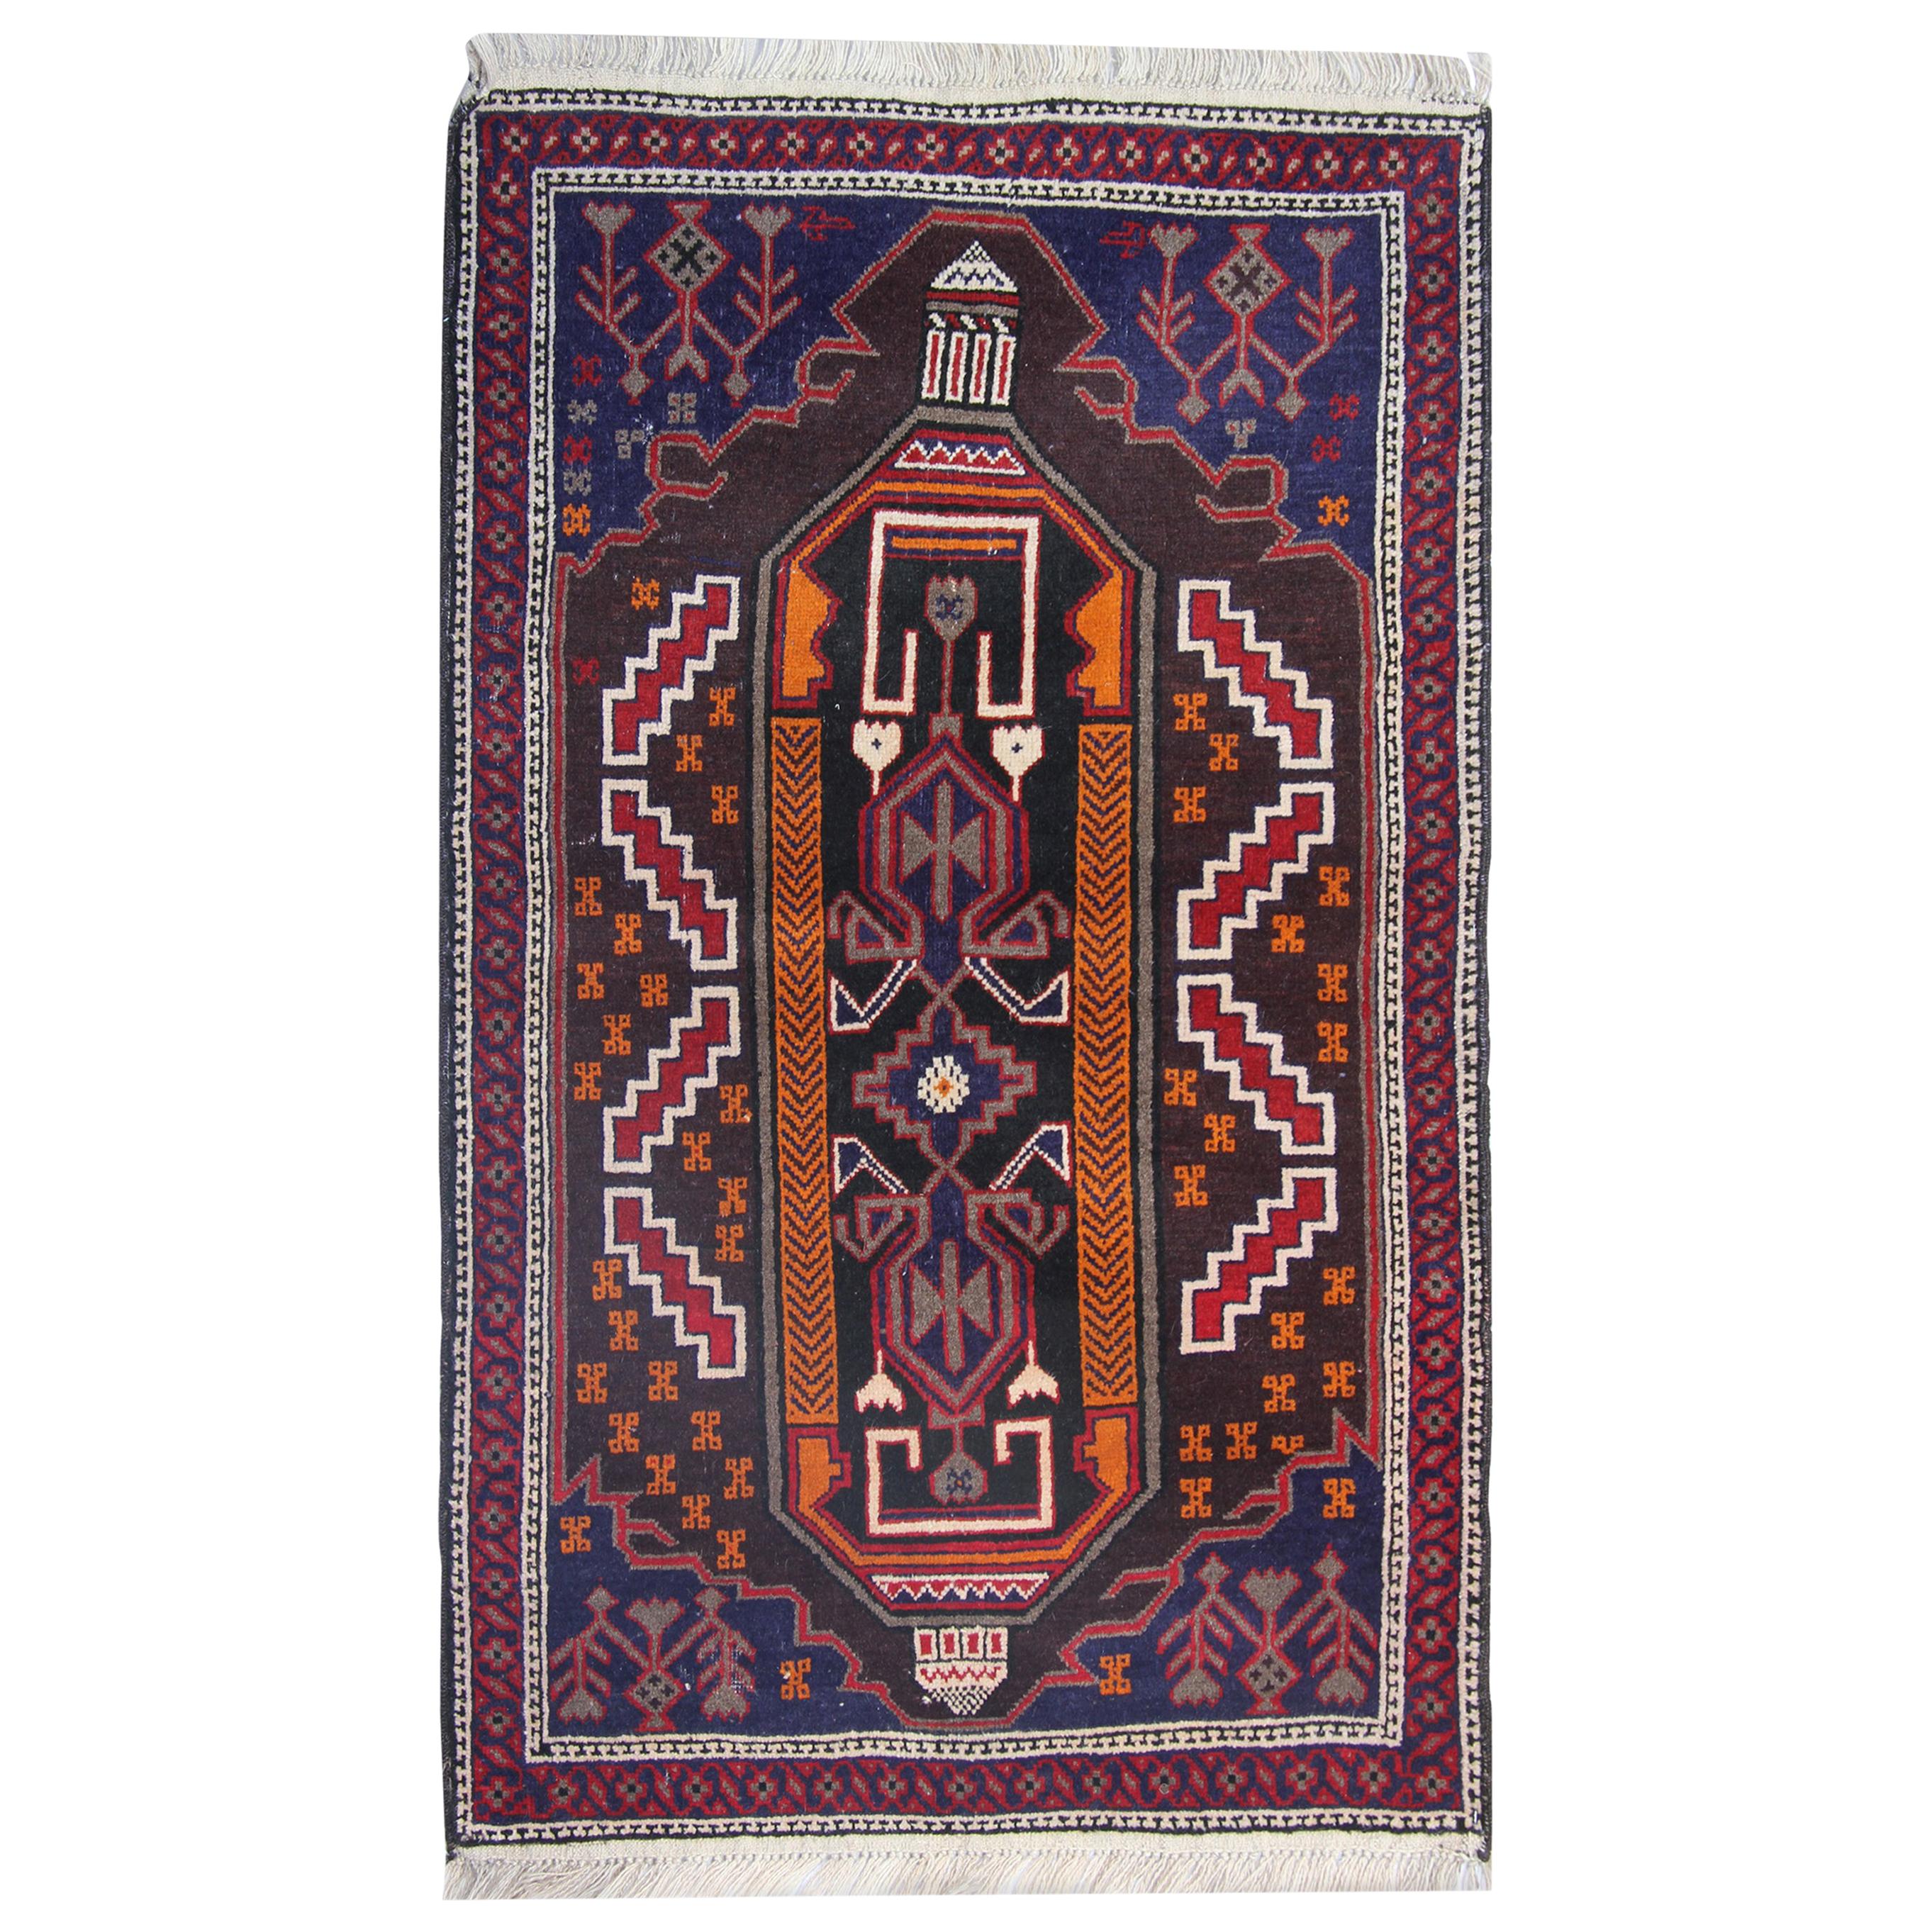 Tapis oriental tribal fait à la main, tapis traditionnel rustique